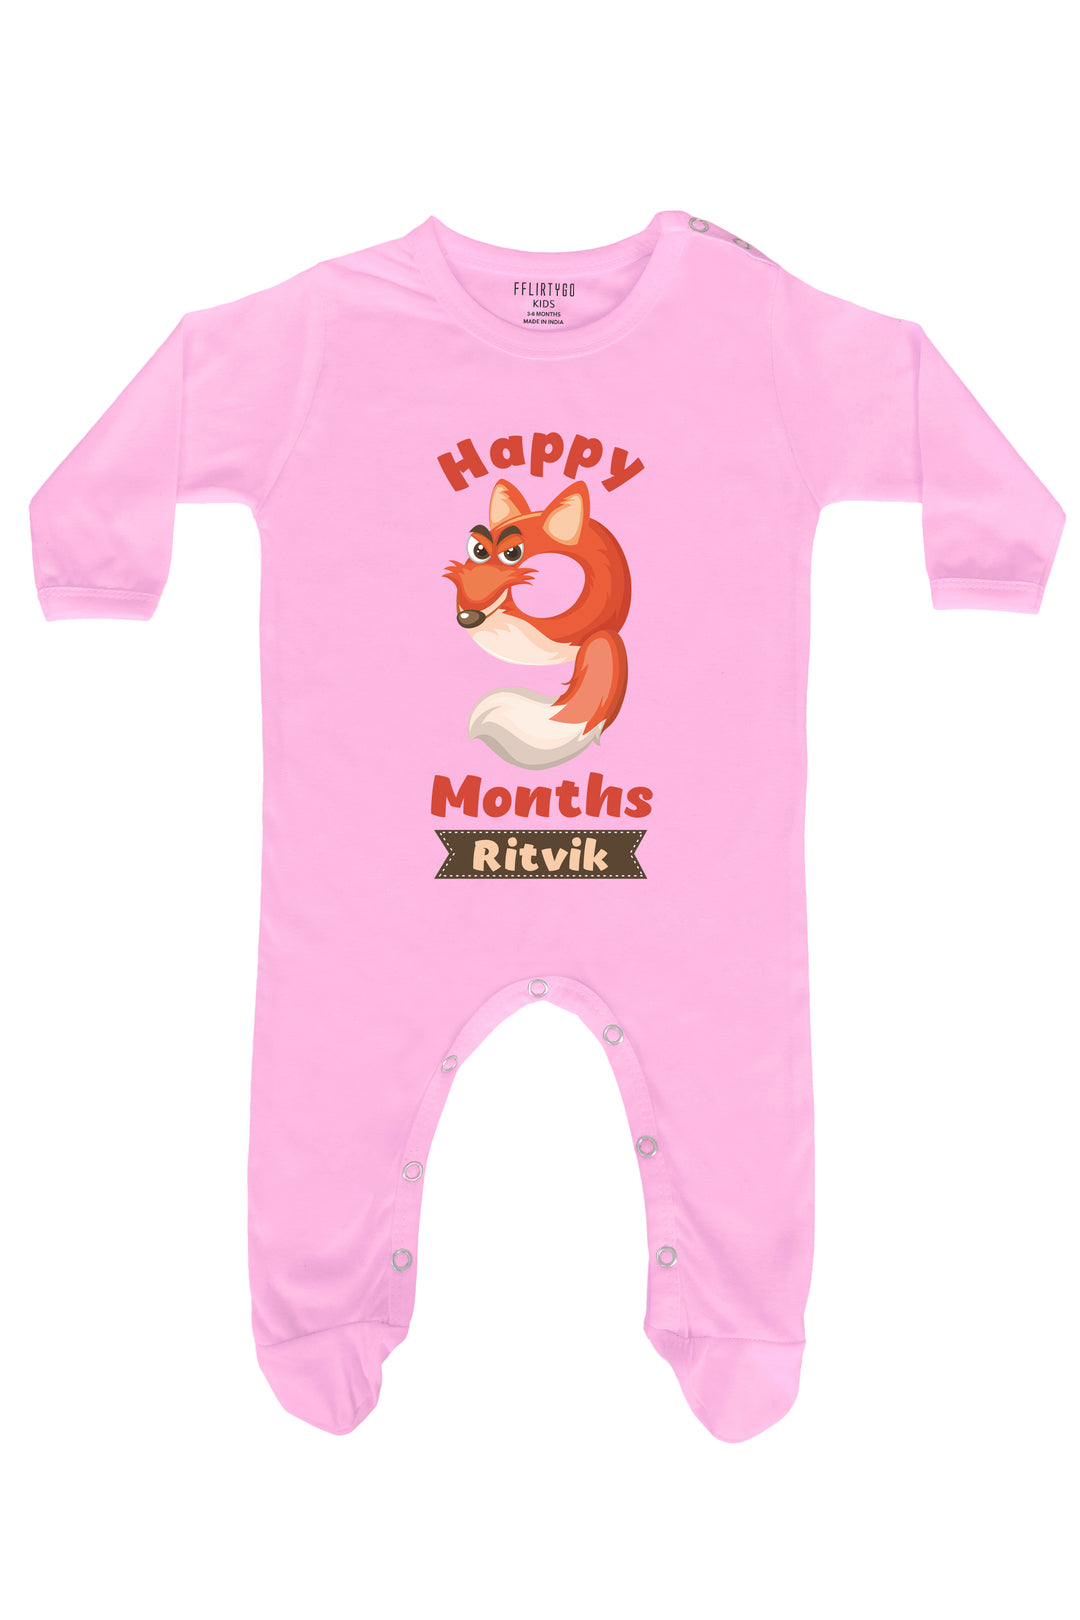 Nine Month Milestone Baby Romper | Onesies w/ Custom Name